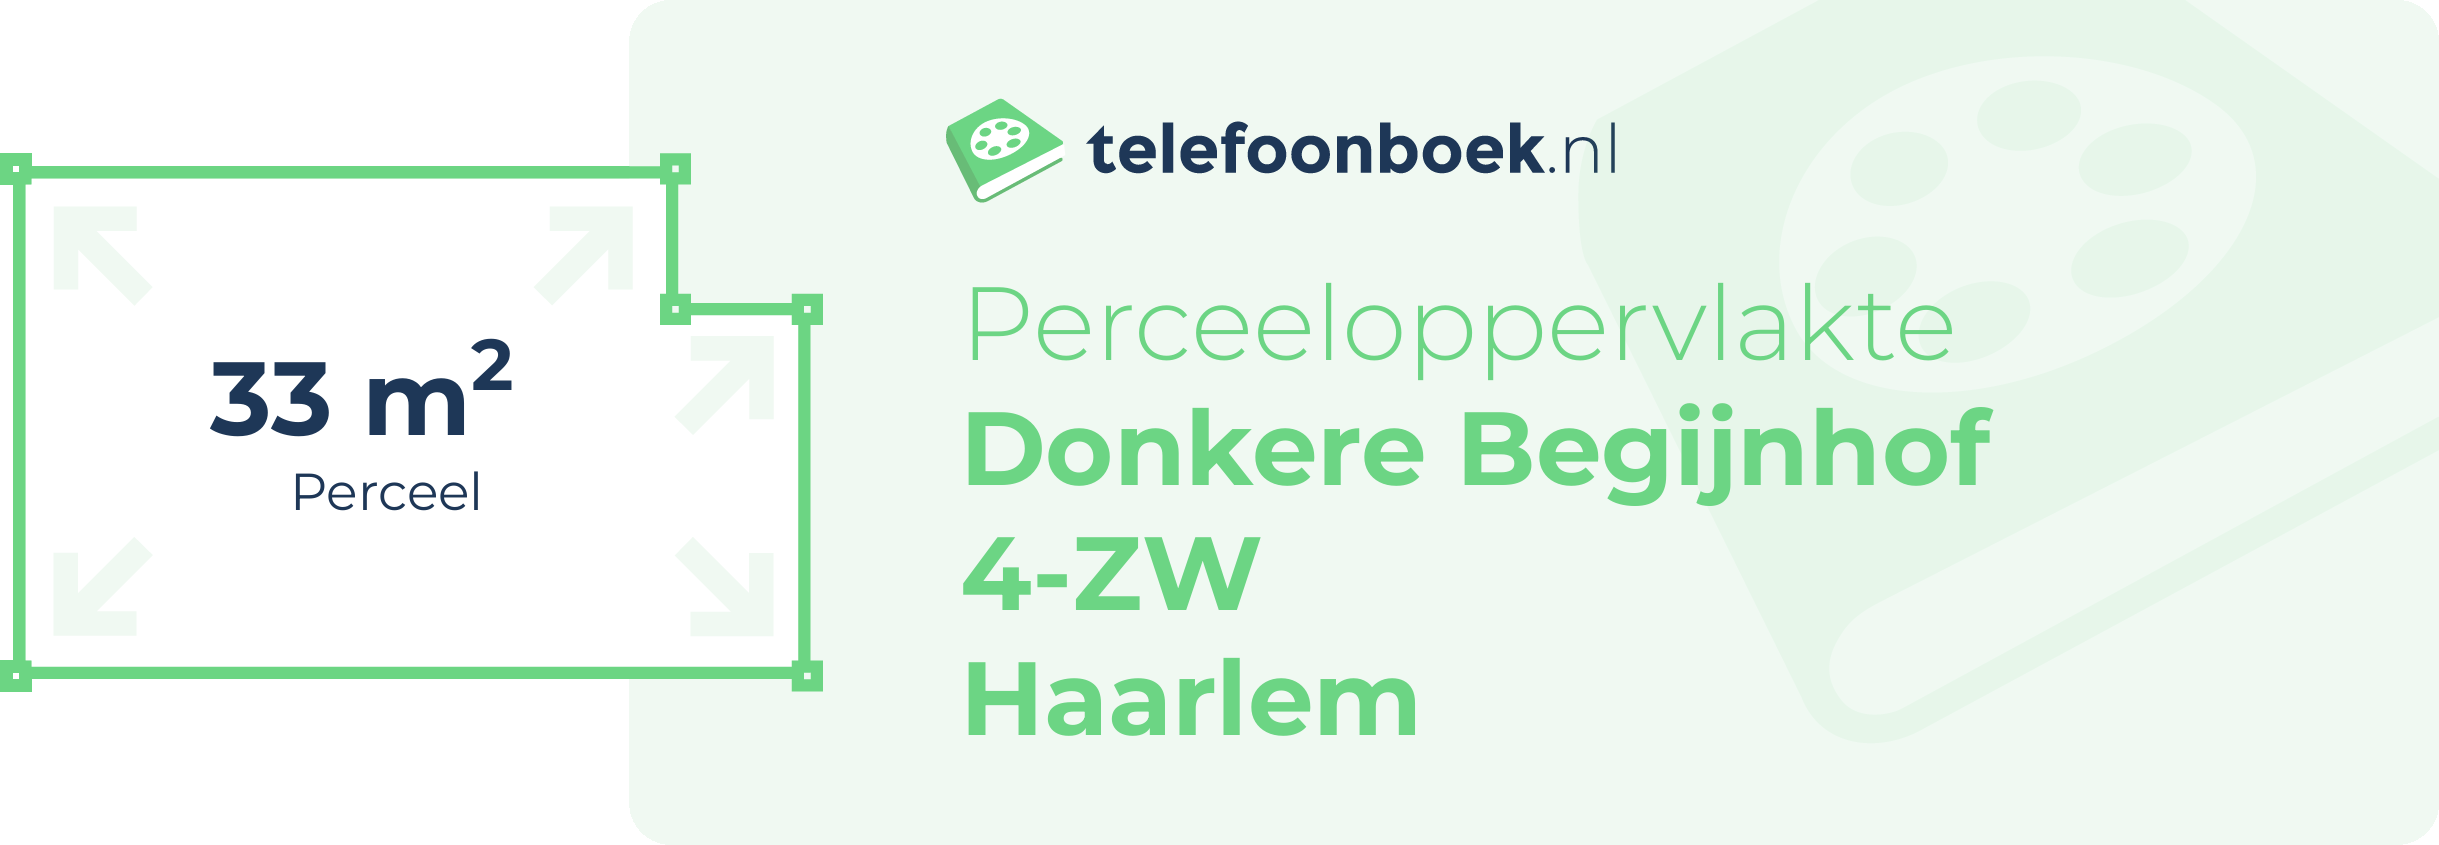 Perceeloppervlakte Donkere Begijnhof 4-ZW Haarlem